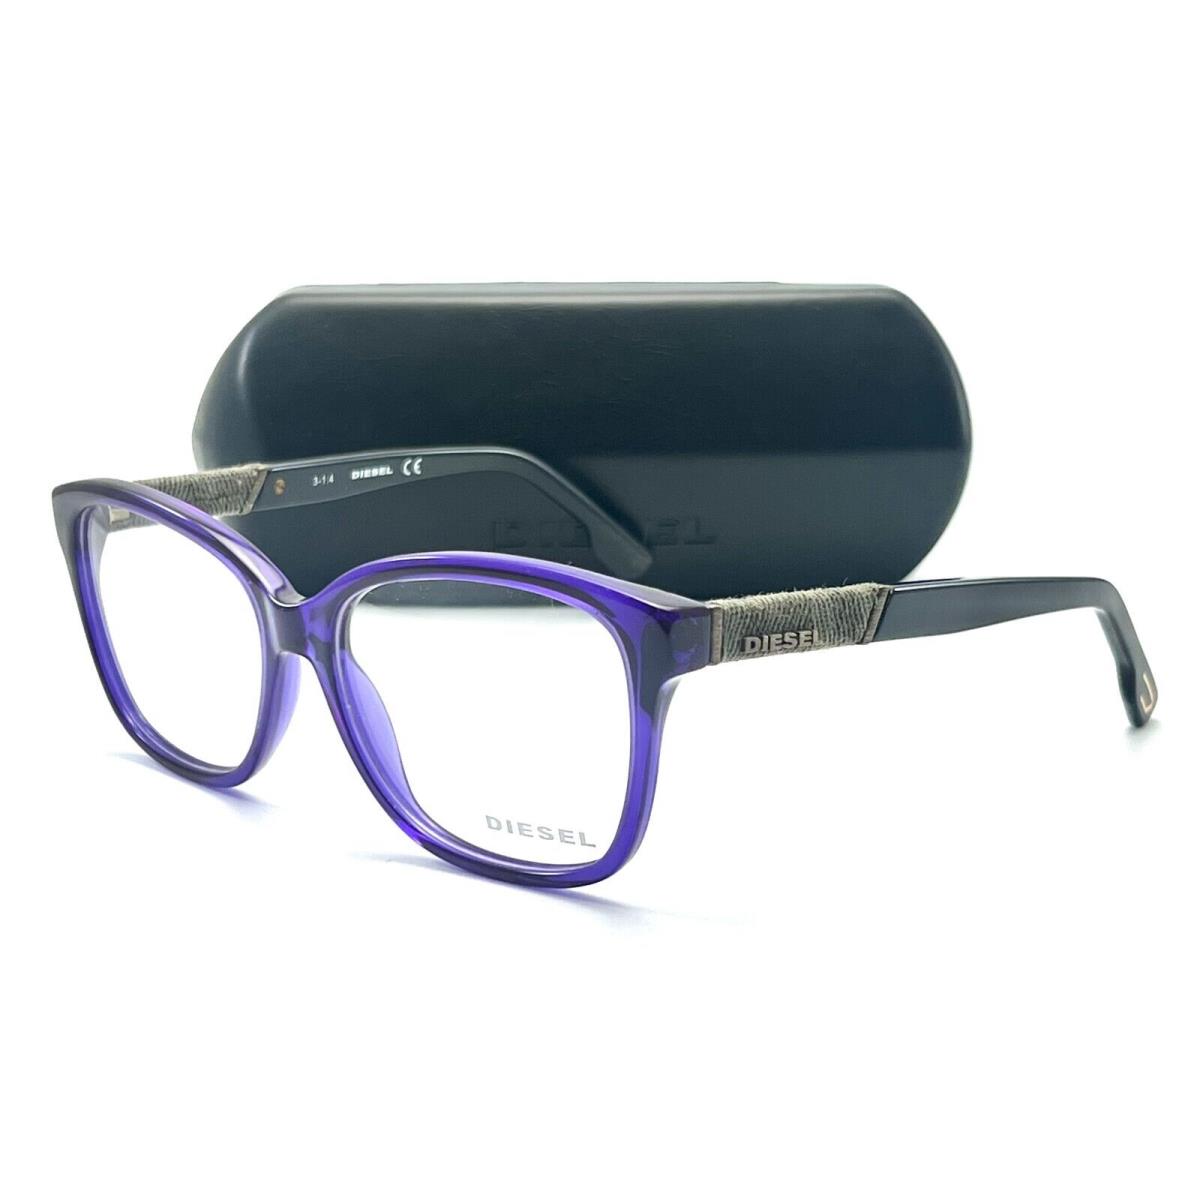 Diesel DL5108 081 Shiny Violet Eyeglasses 54-15 140 W/case